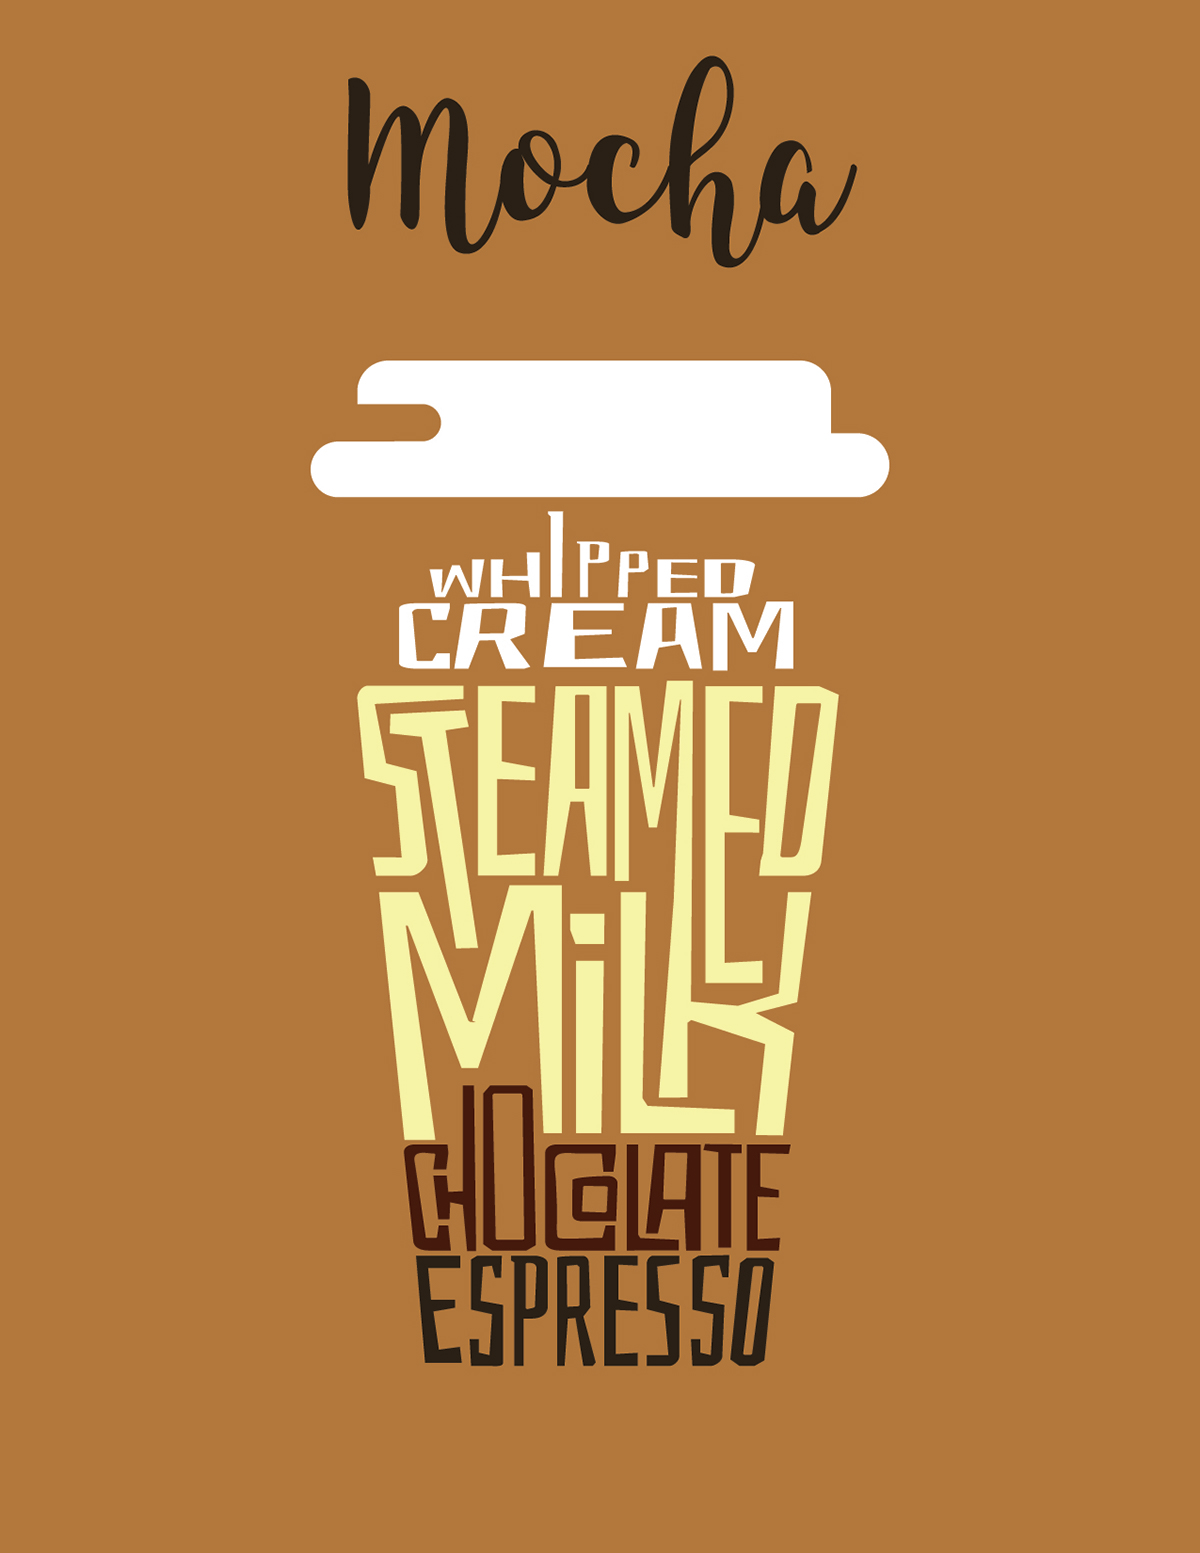 Coffee posters latte cappuccino Mocha espresso